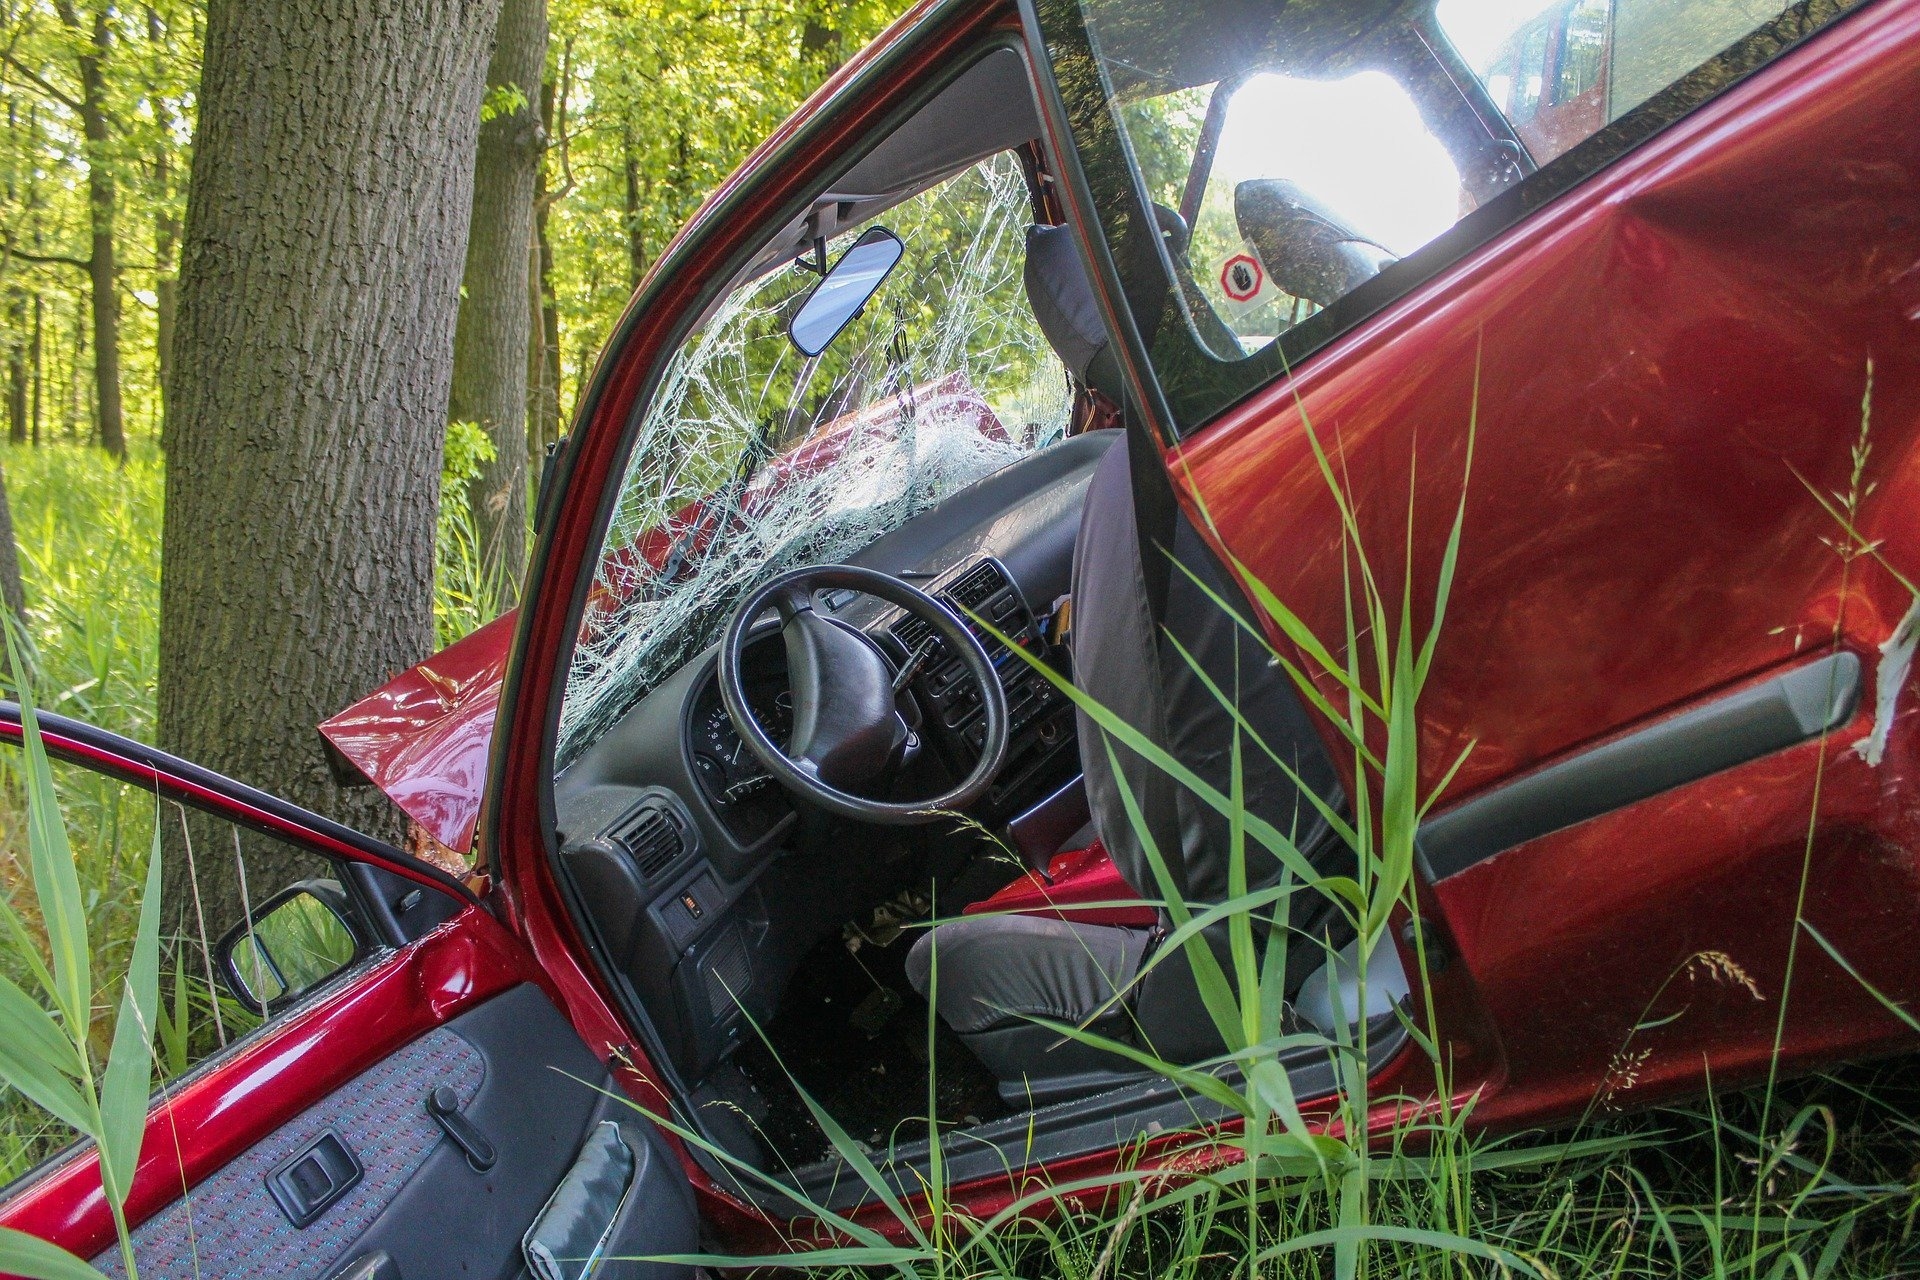 Verunfalltes rotes Auto vor einem Baum